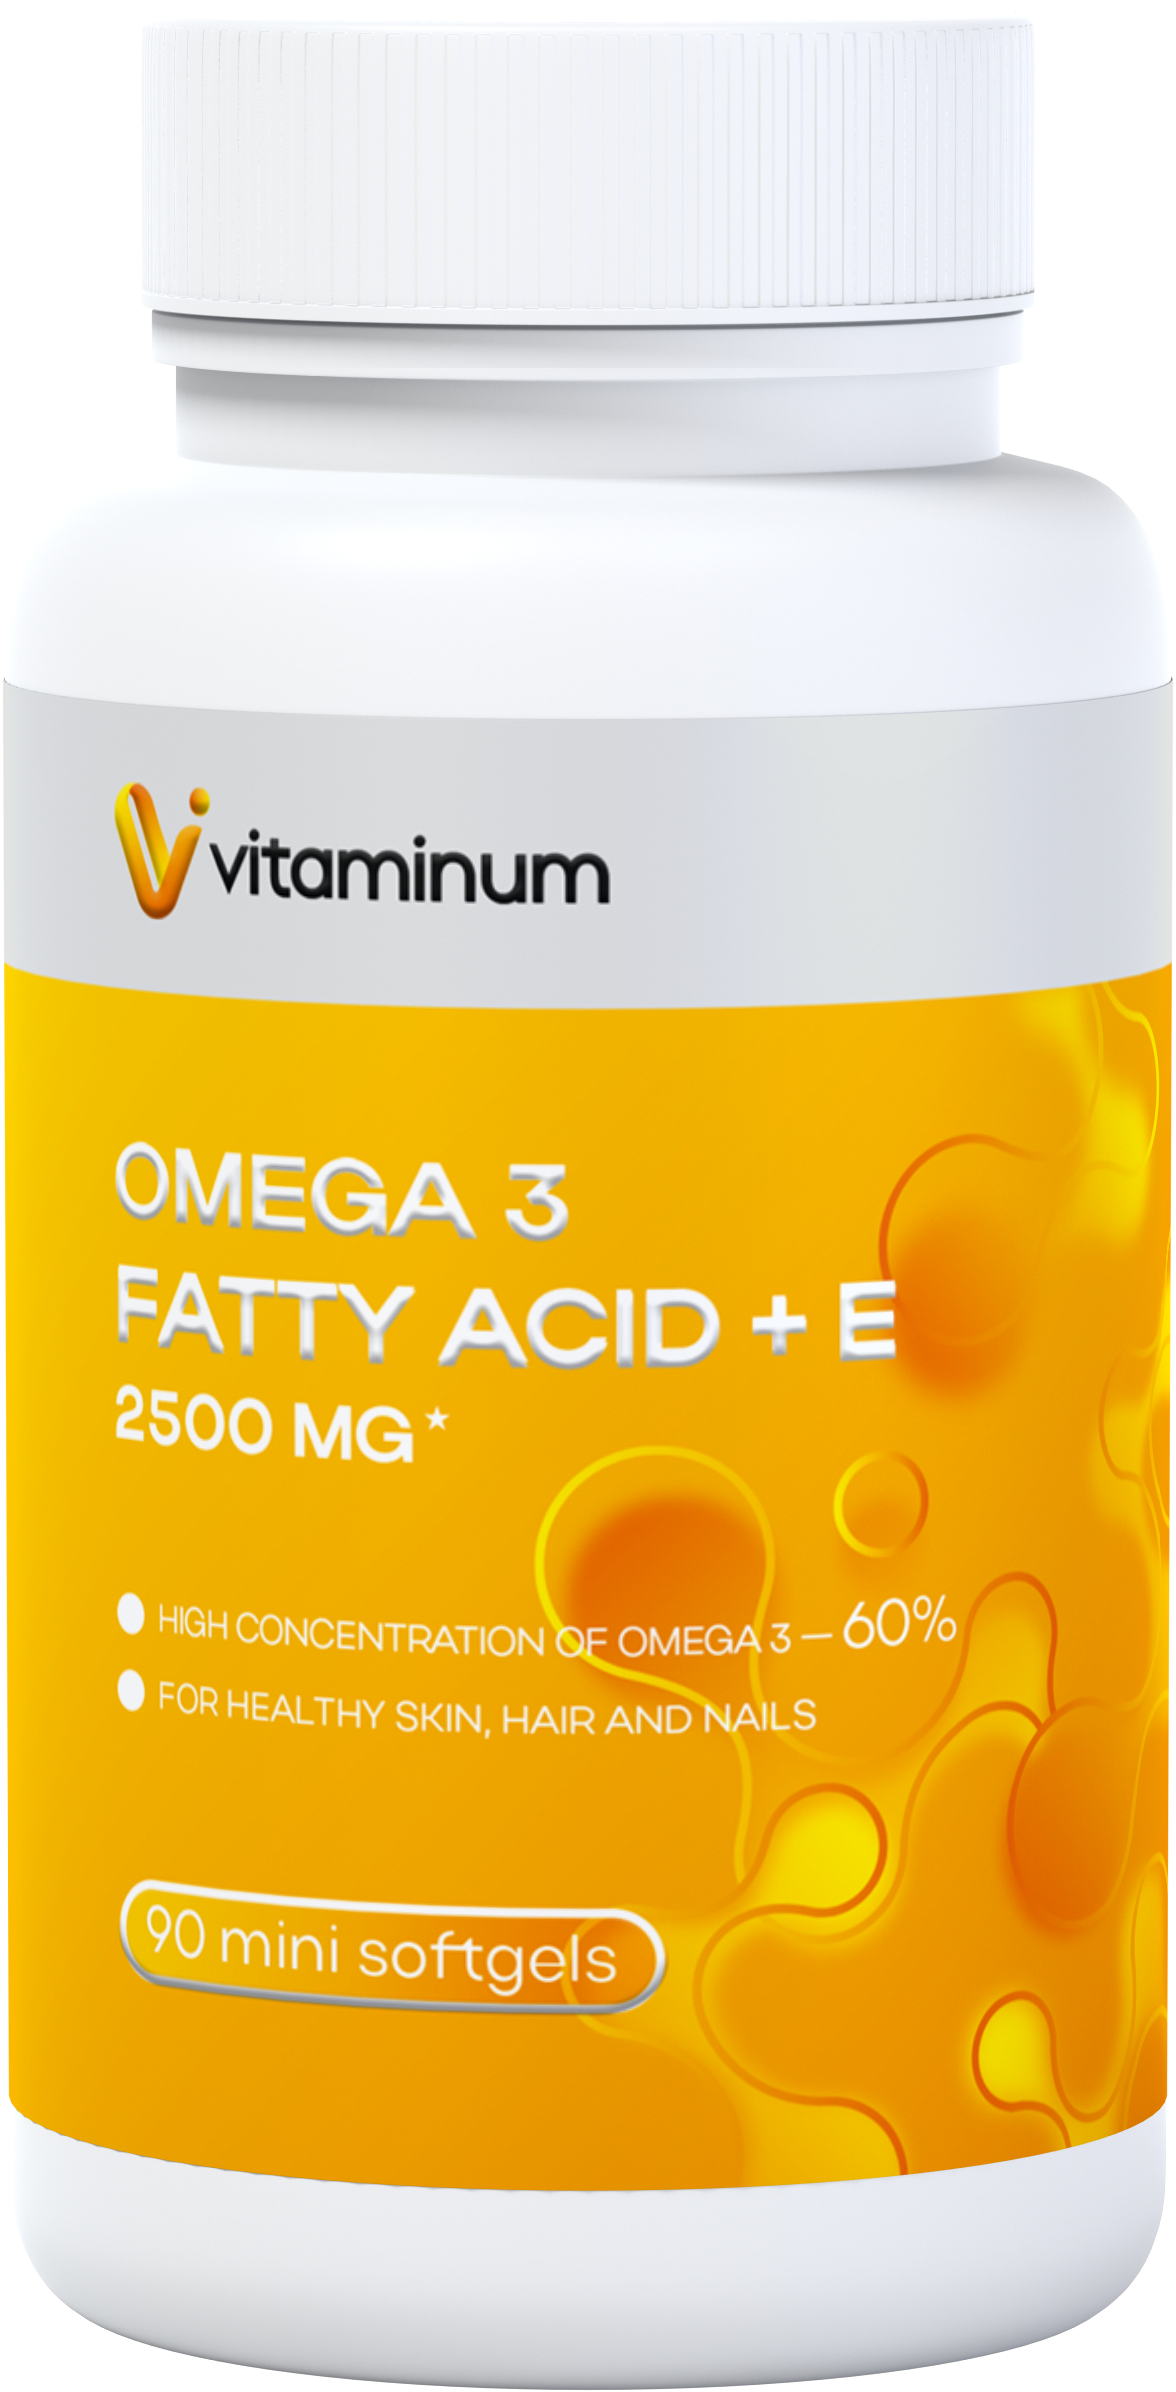  Vitaminum ОМЕГА 3 60% + витамин Е (2500 MG*) 90 капсул 700 мг   в Челябинске